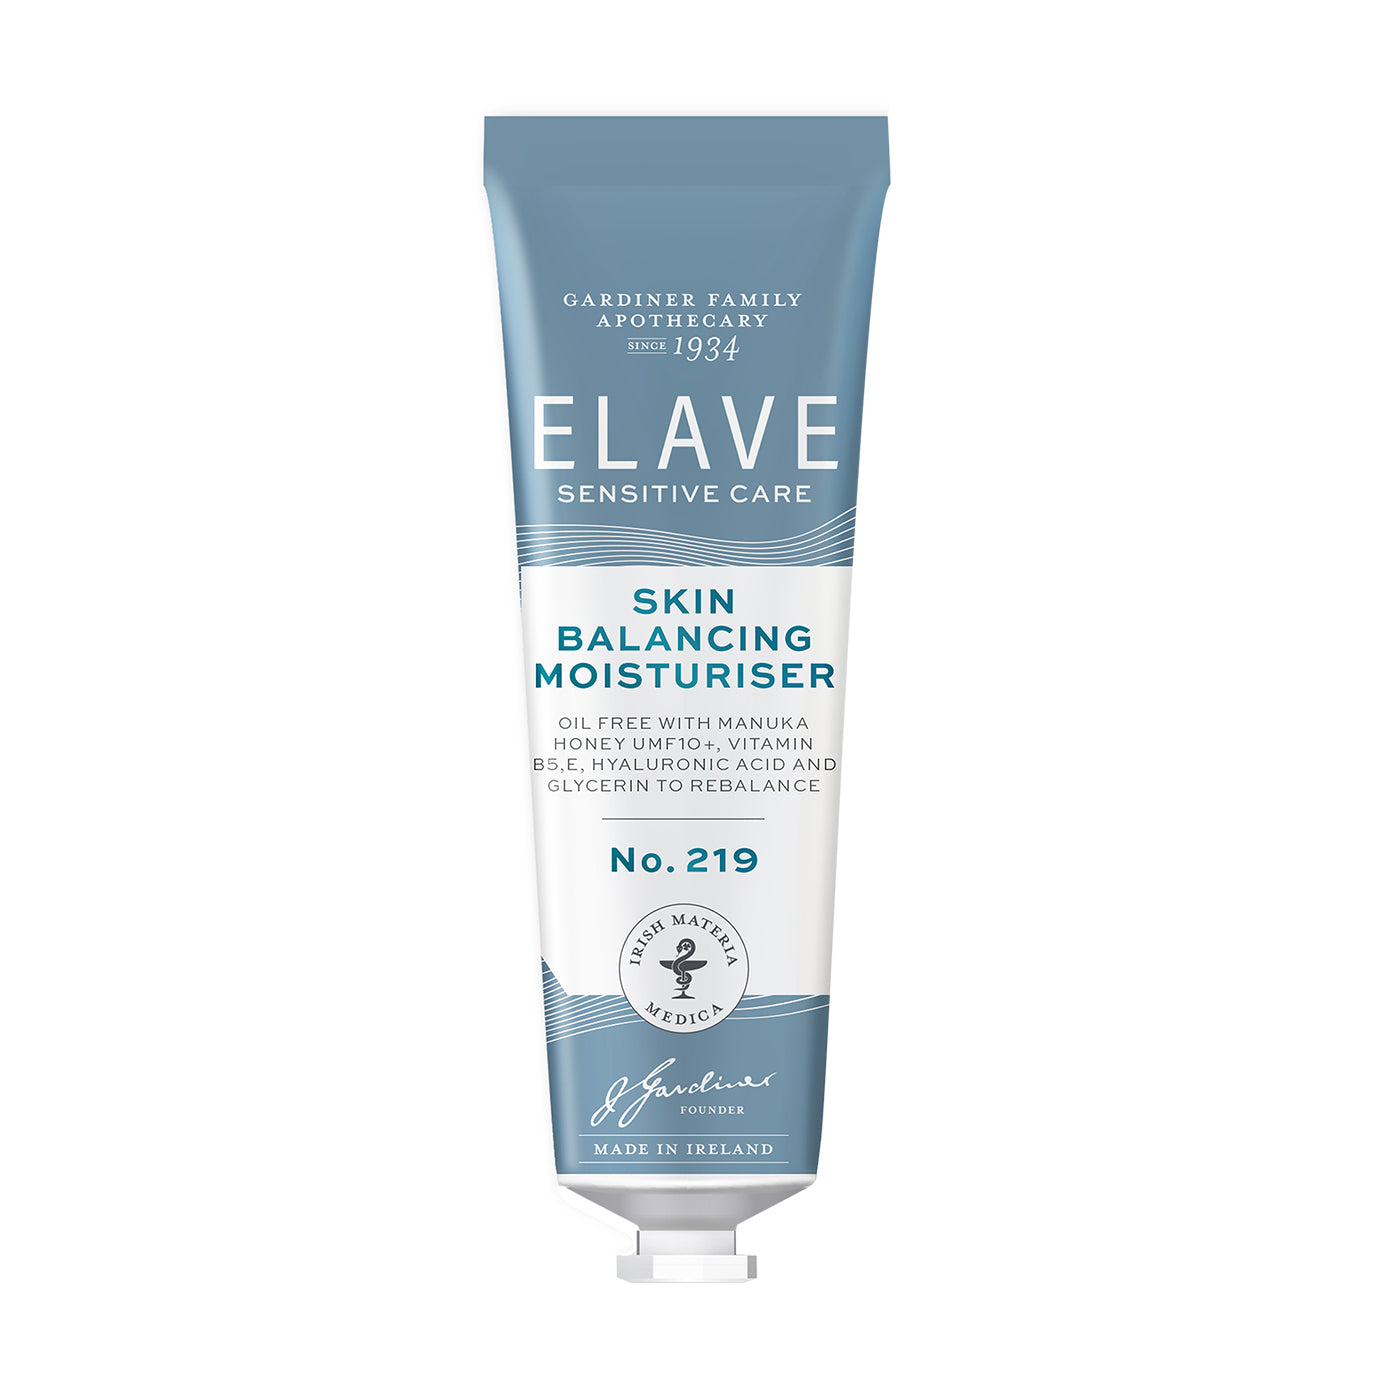 Elave Oil-Free Skin Balancing Moisturiser